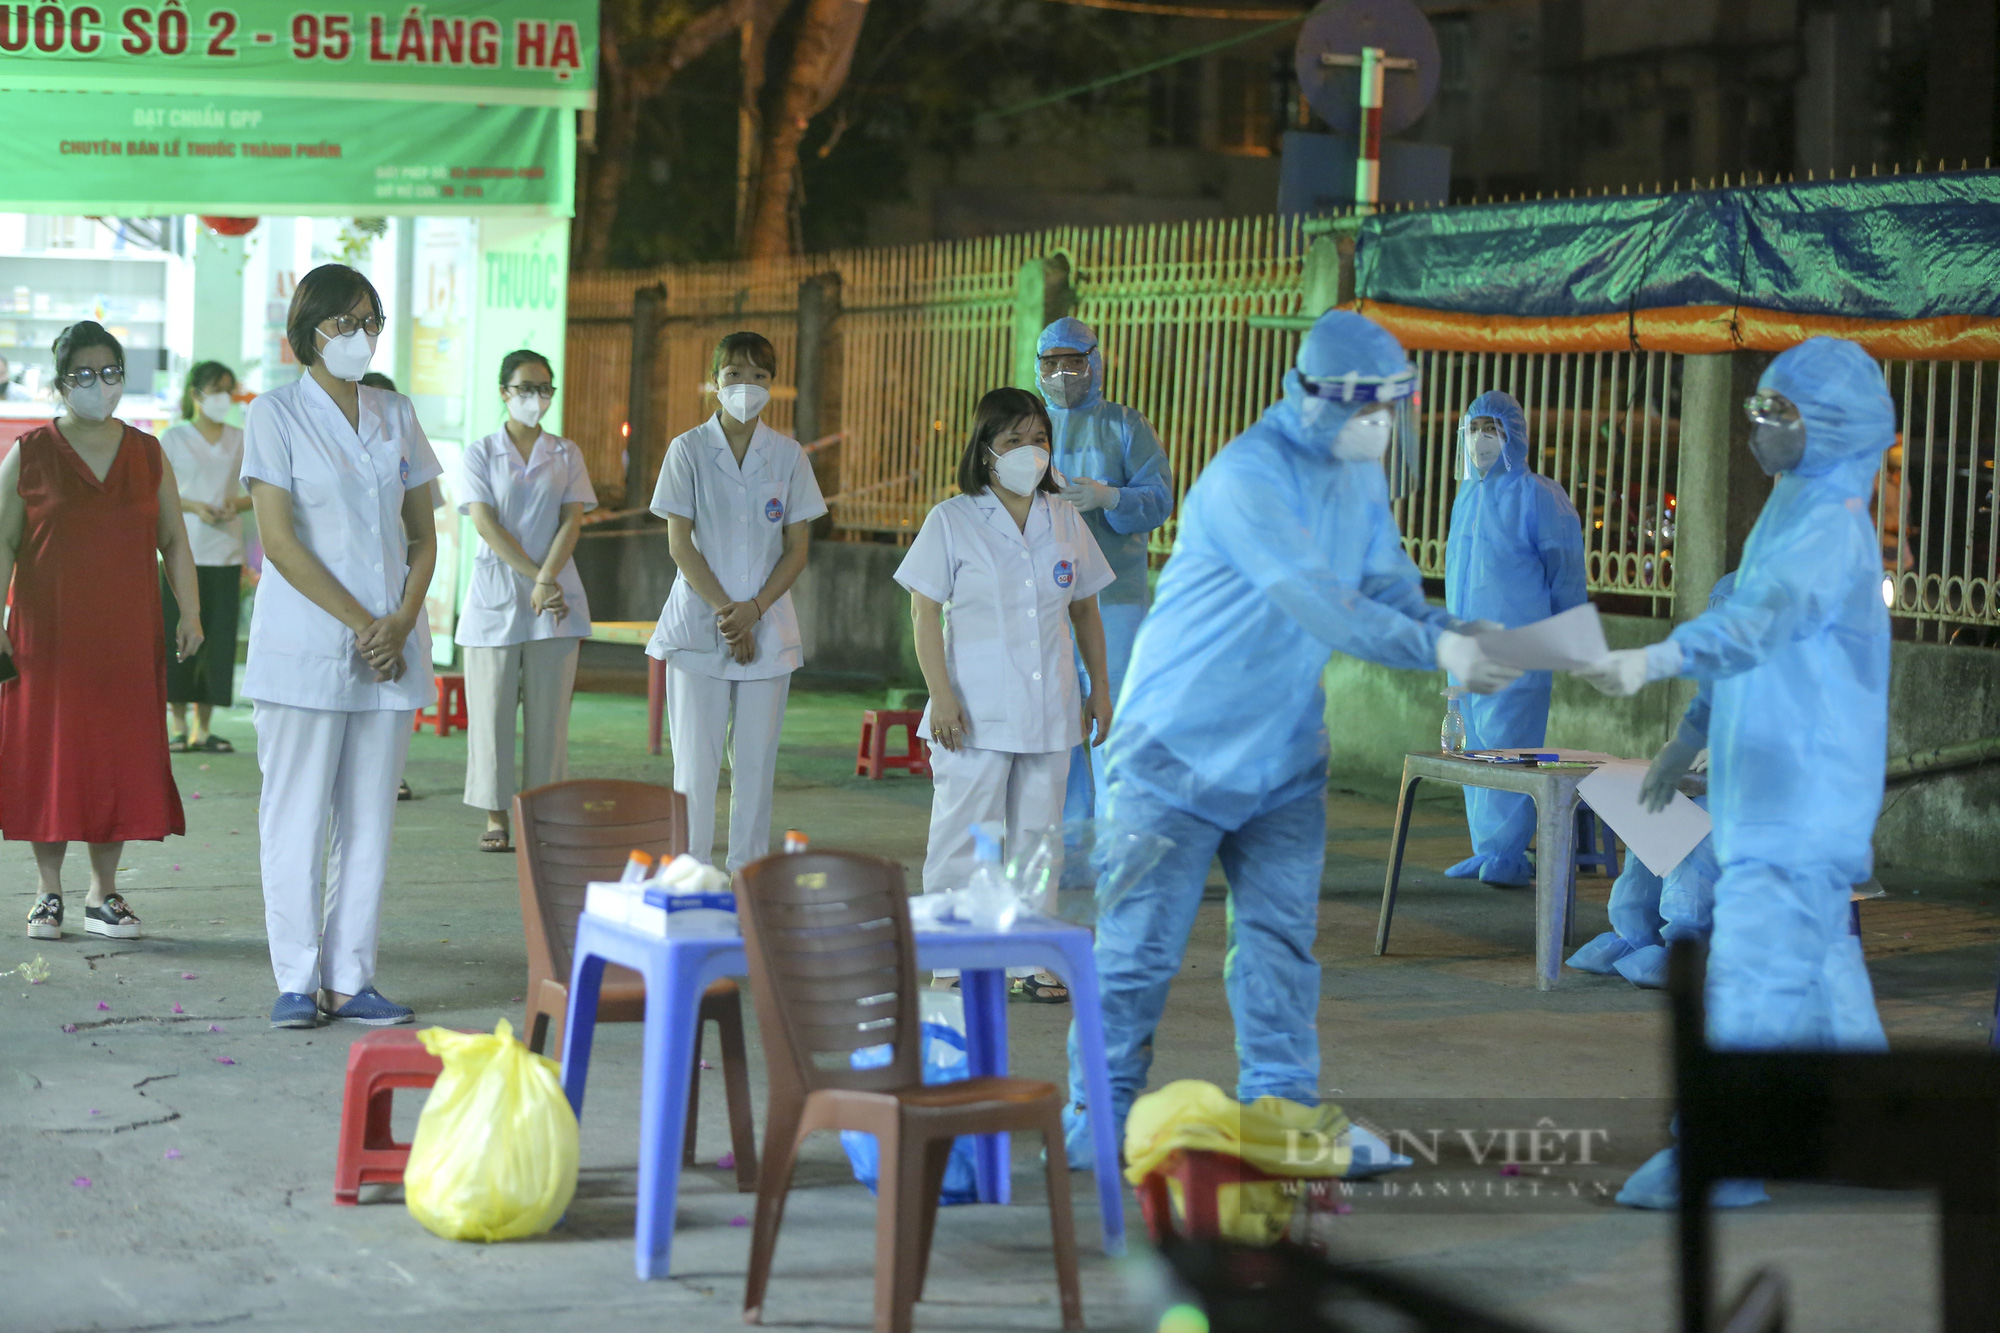 Hà Nội thêm 19 ca dương tính SARS-CoV-2, nhiều nhân viên nhà thuốc lây nhiễm ngoài cộng đồng - Ảnh 2.